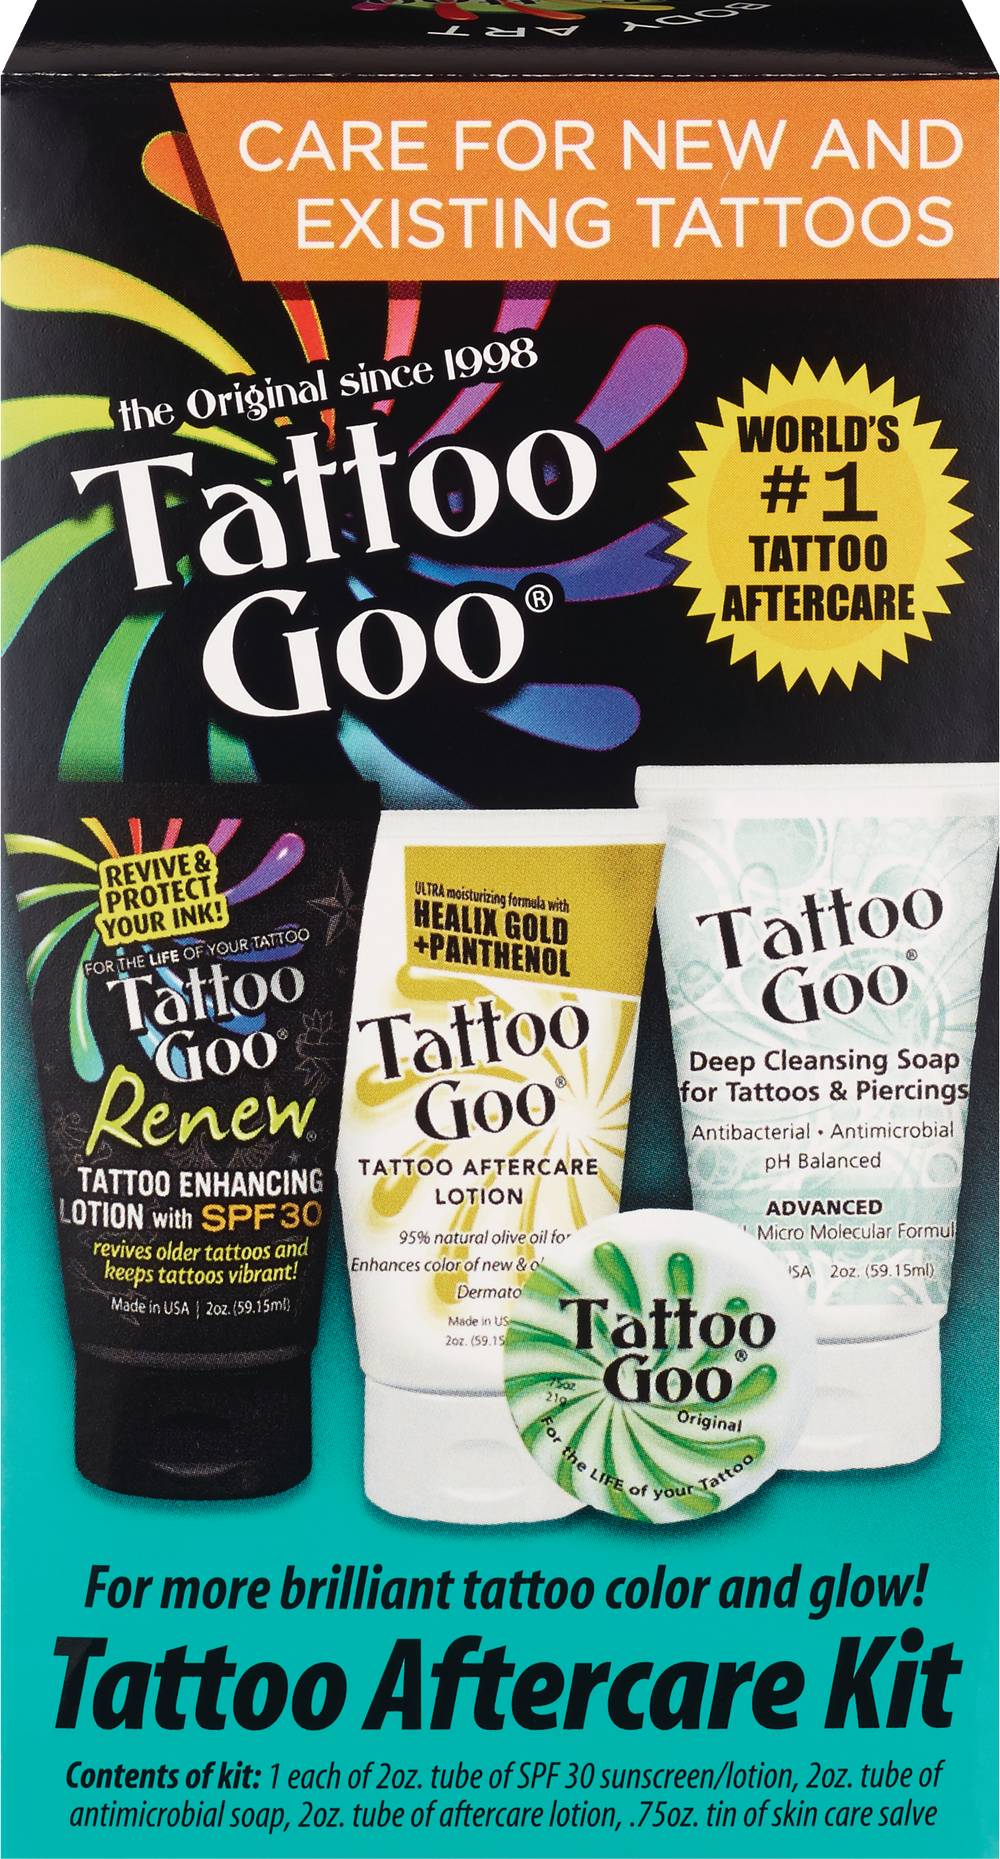 Tattoo Goo Tattoo AfterCare Kit